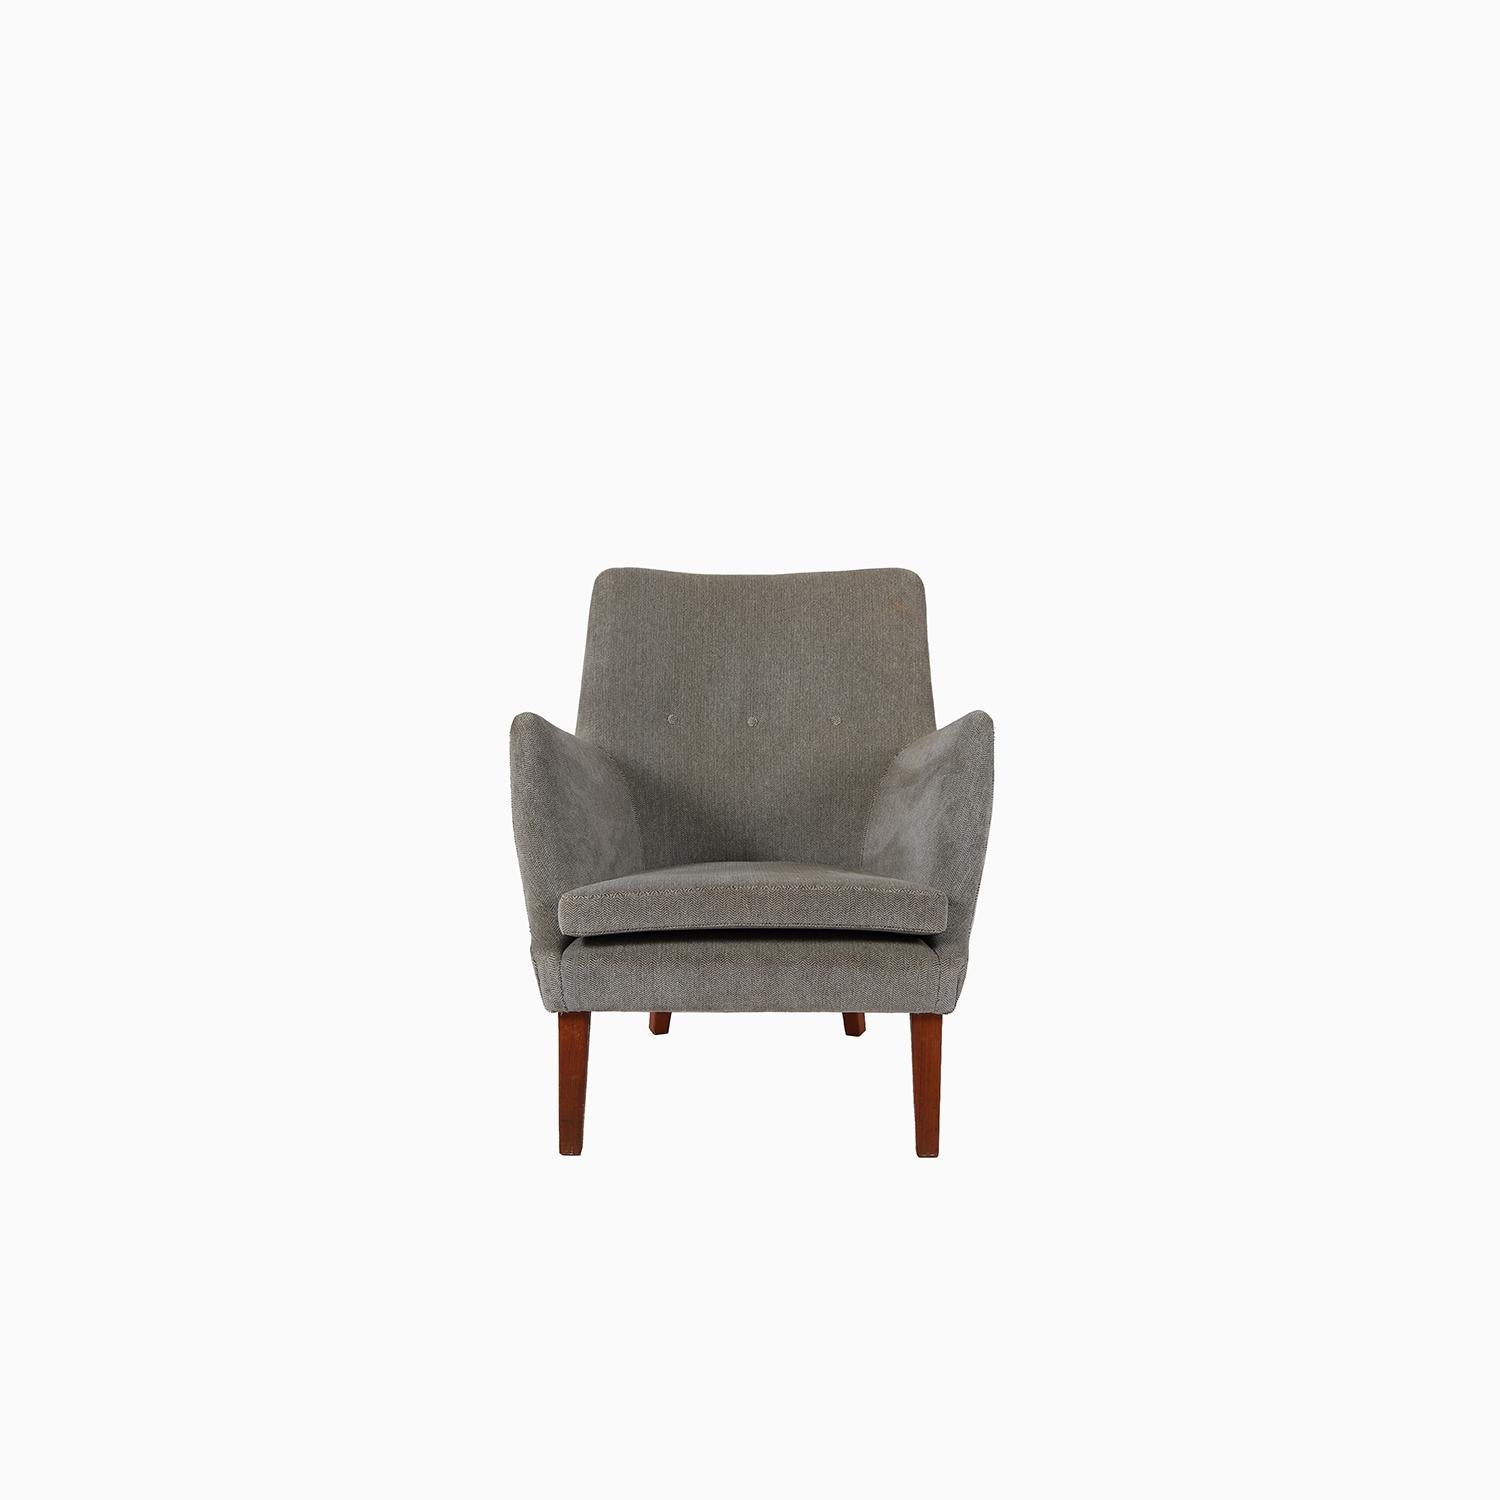 Scandinavian Modern Arne Vodder AV 53 Upholstered Lounge Chair For Sale